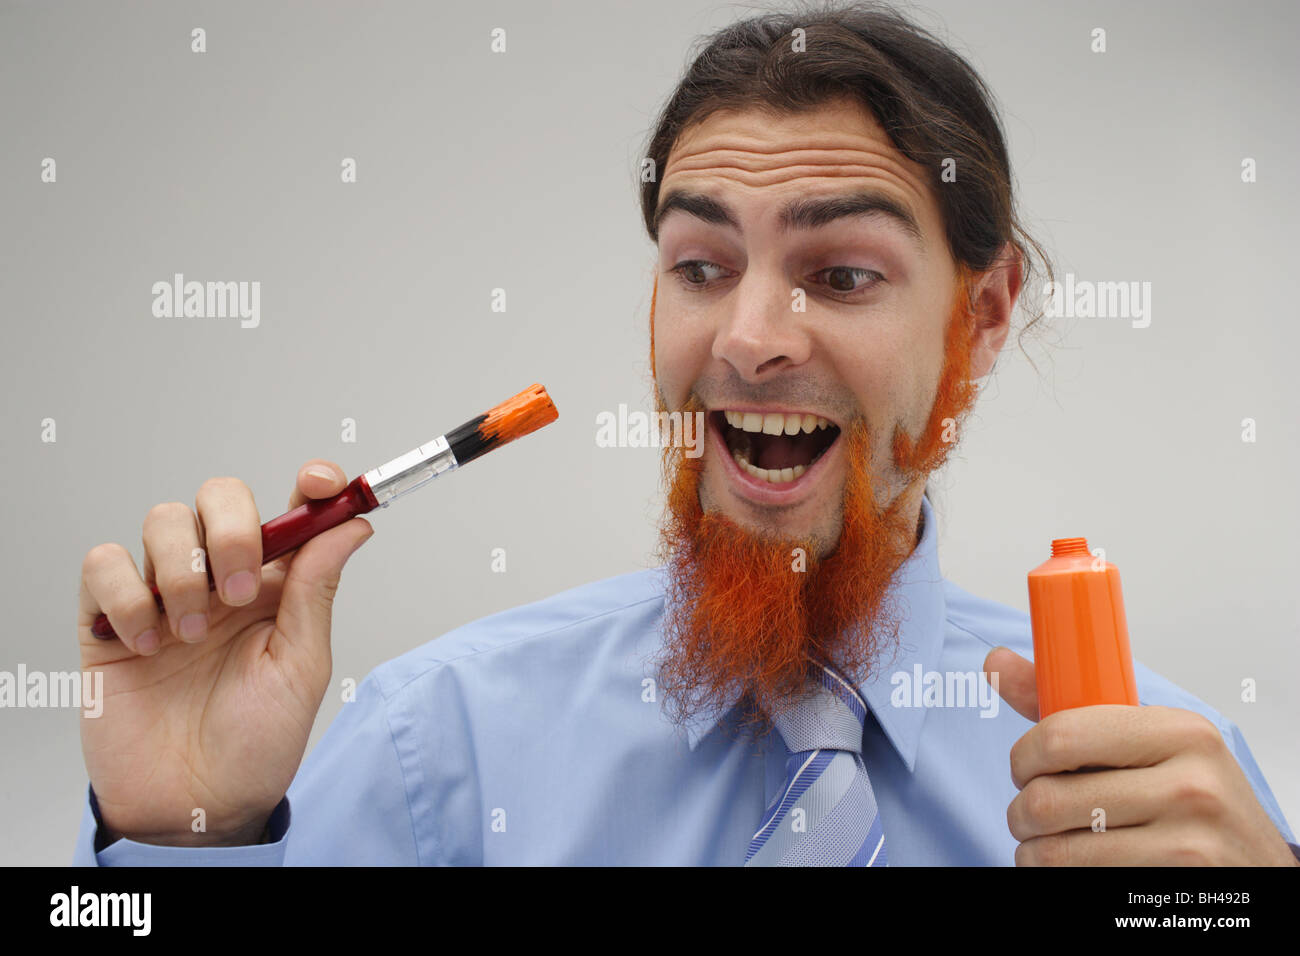 Un jeune homme avec sa barbe peinture peinture orange, rire Banque D'Images